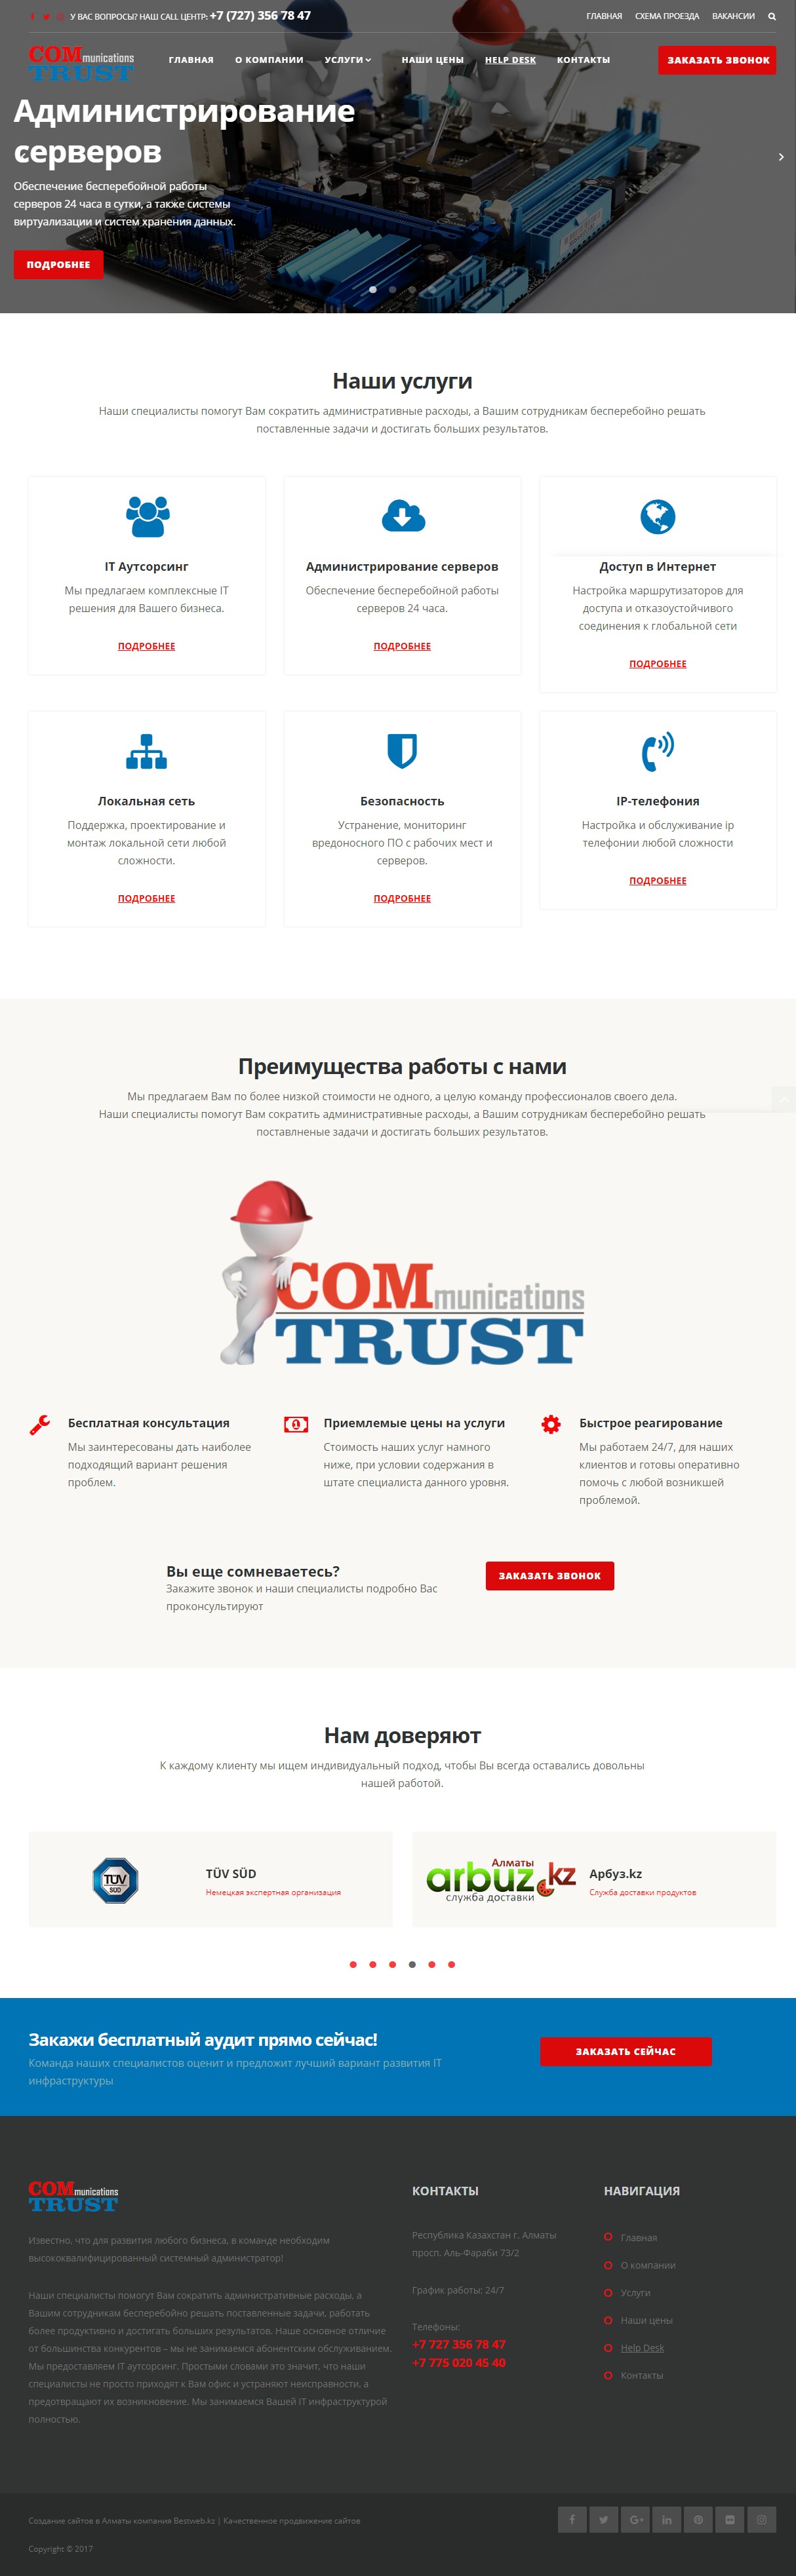 Корпоративный сайт компании ComTrust